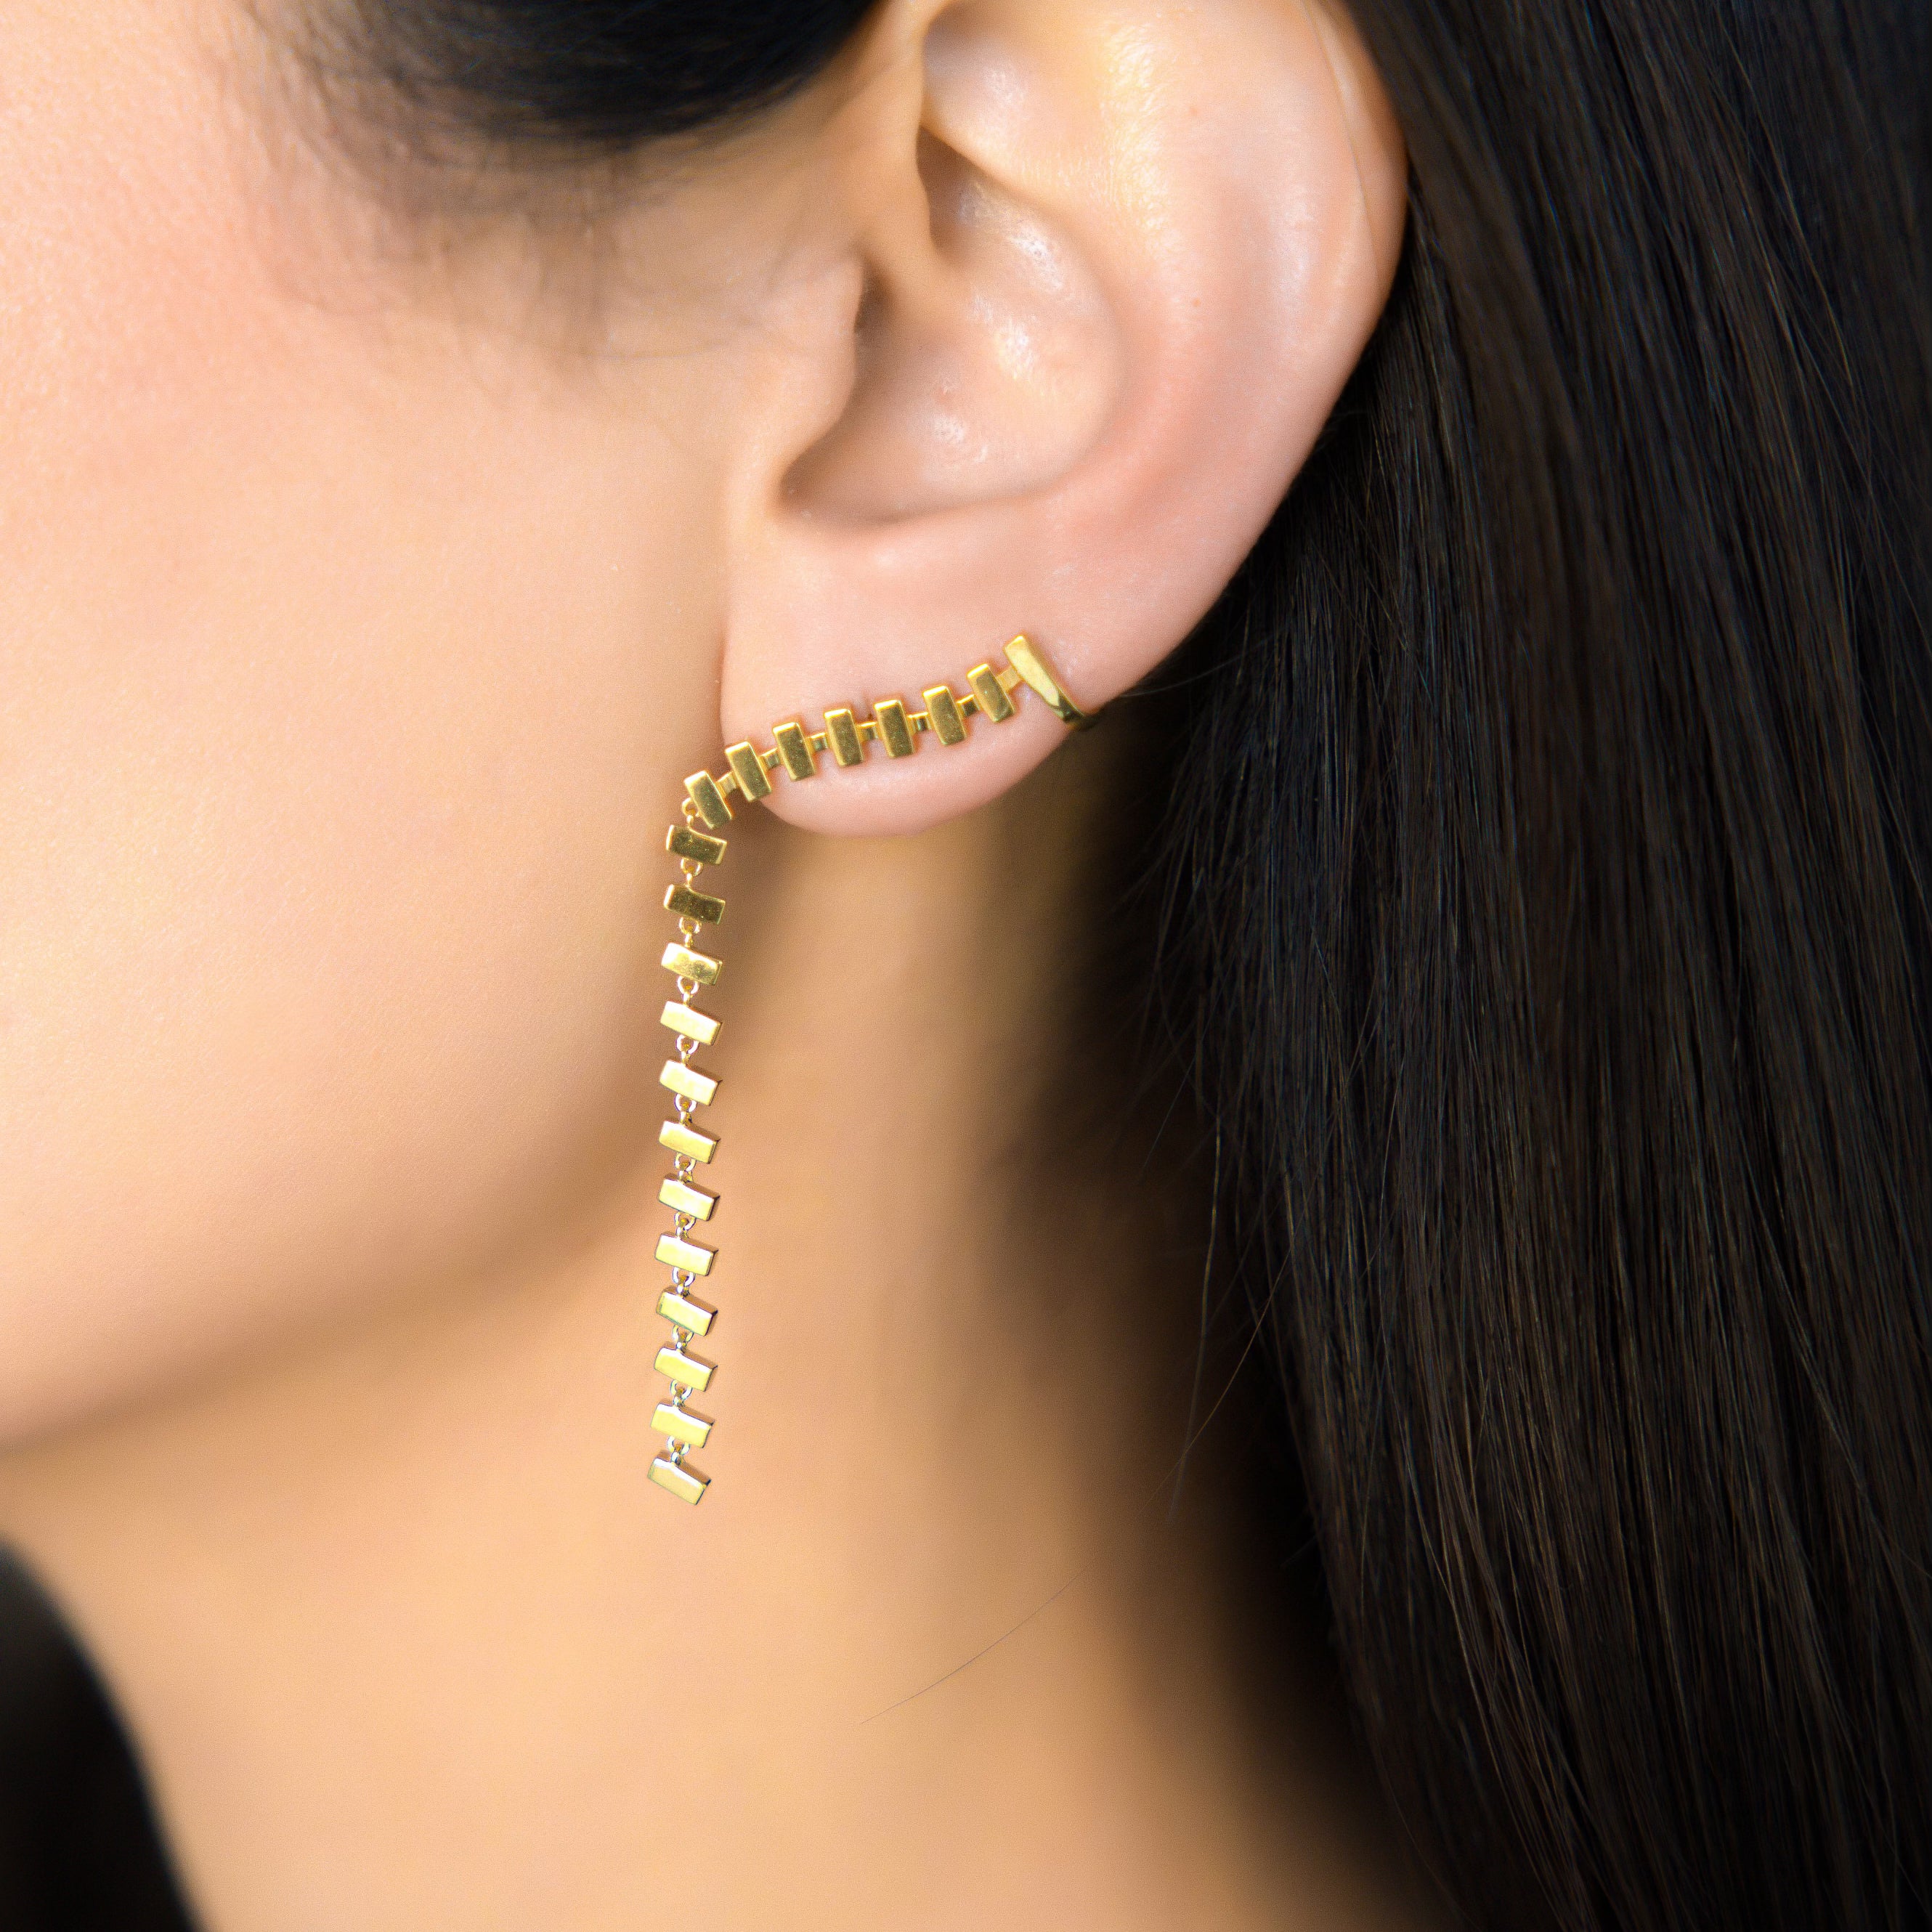 merlon rivulet earring 18k gold vardui kara